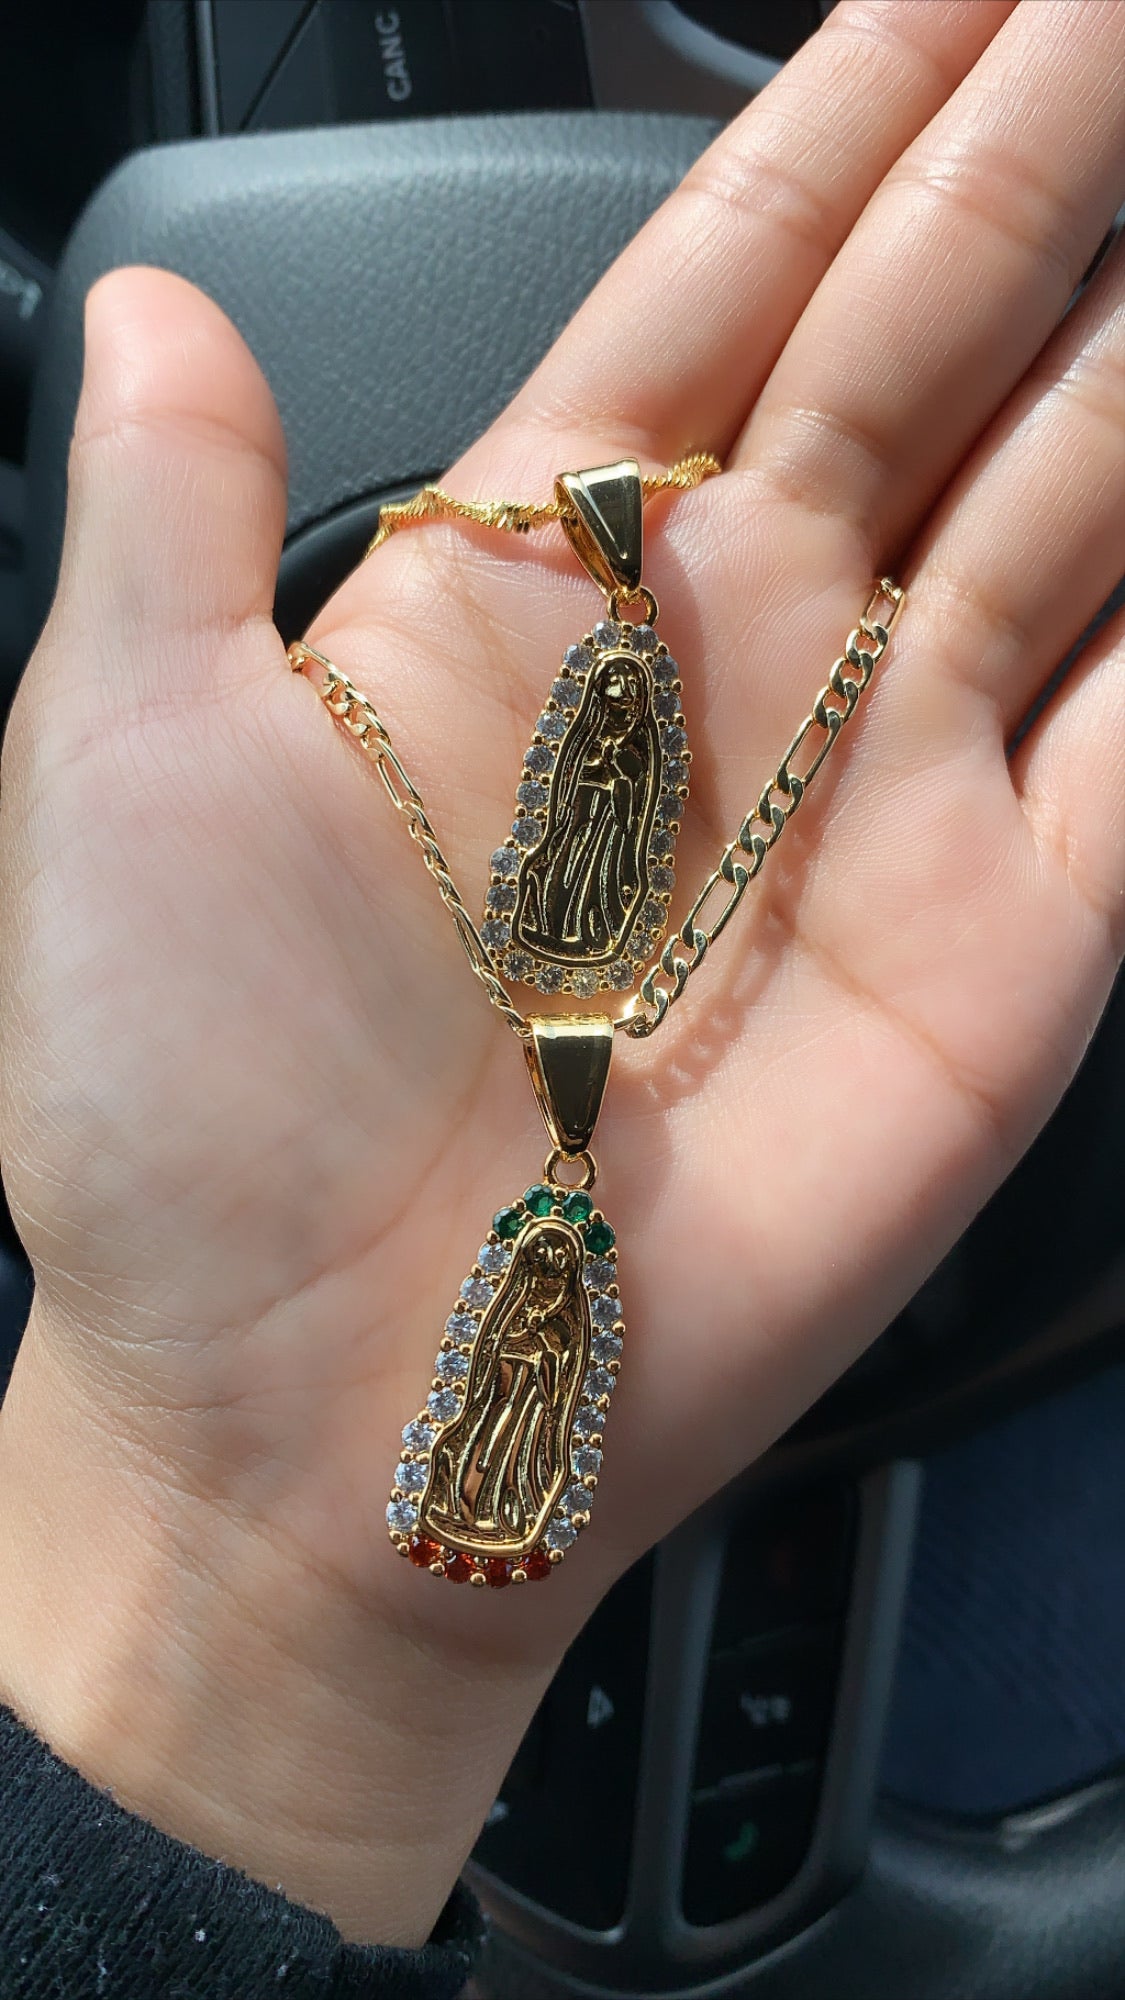 La Reyna necklace